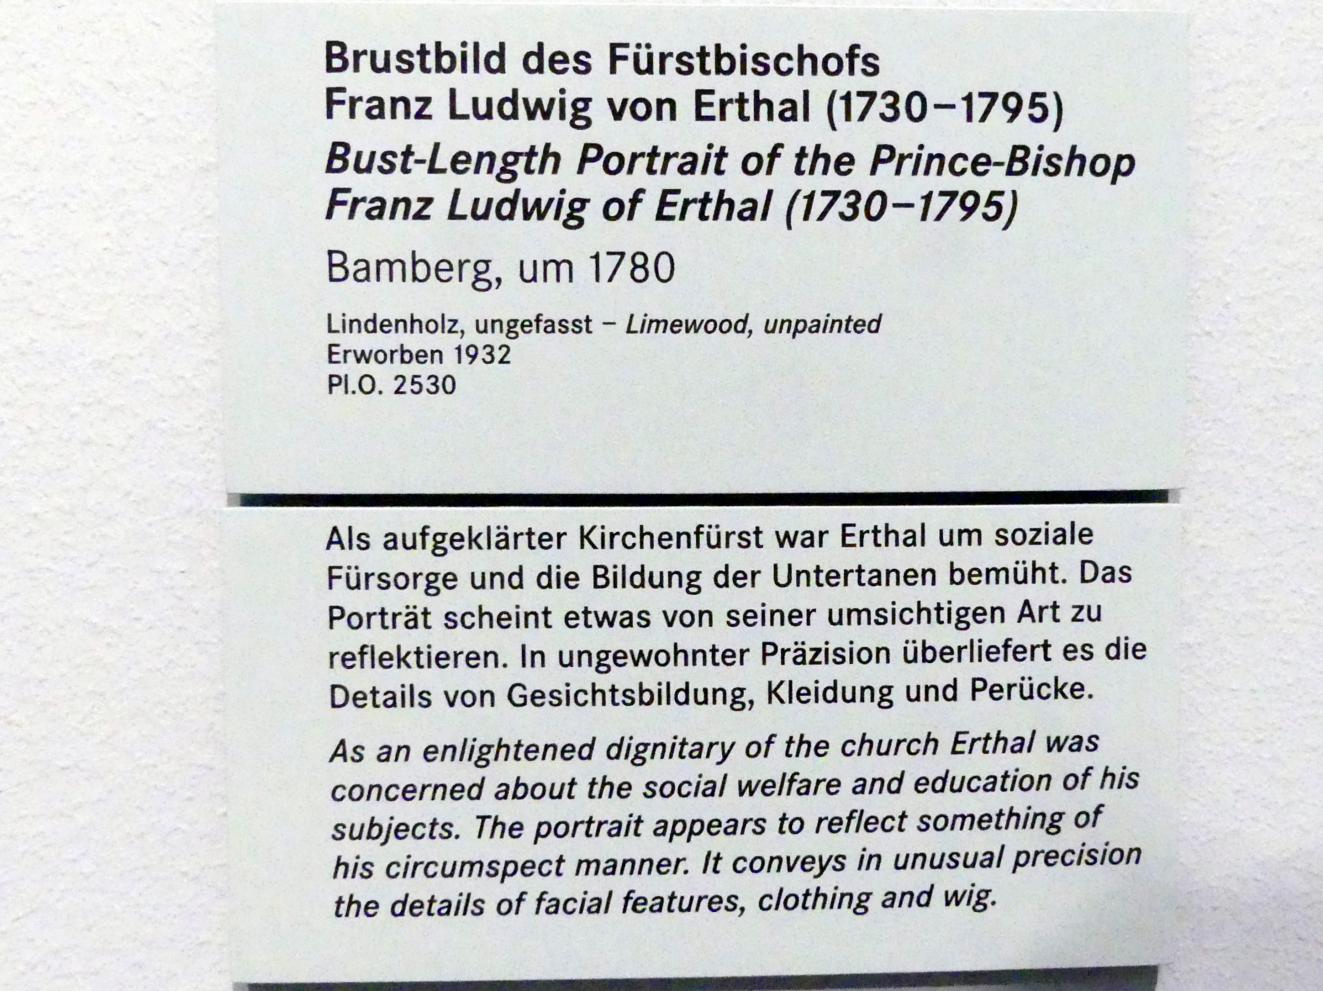 Brustbild des Fürstbischofs Franz Ludwig von Erthal (1730-1795), Nürnberg, Germanisches Nationalmuseum, Saal 130, um 1780, Bild 2/2